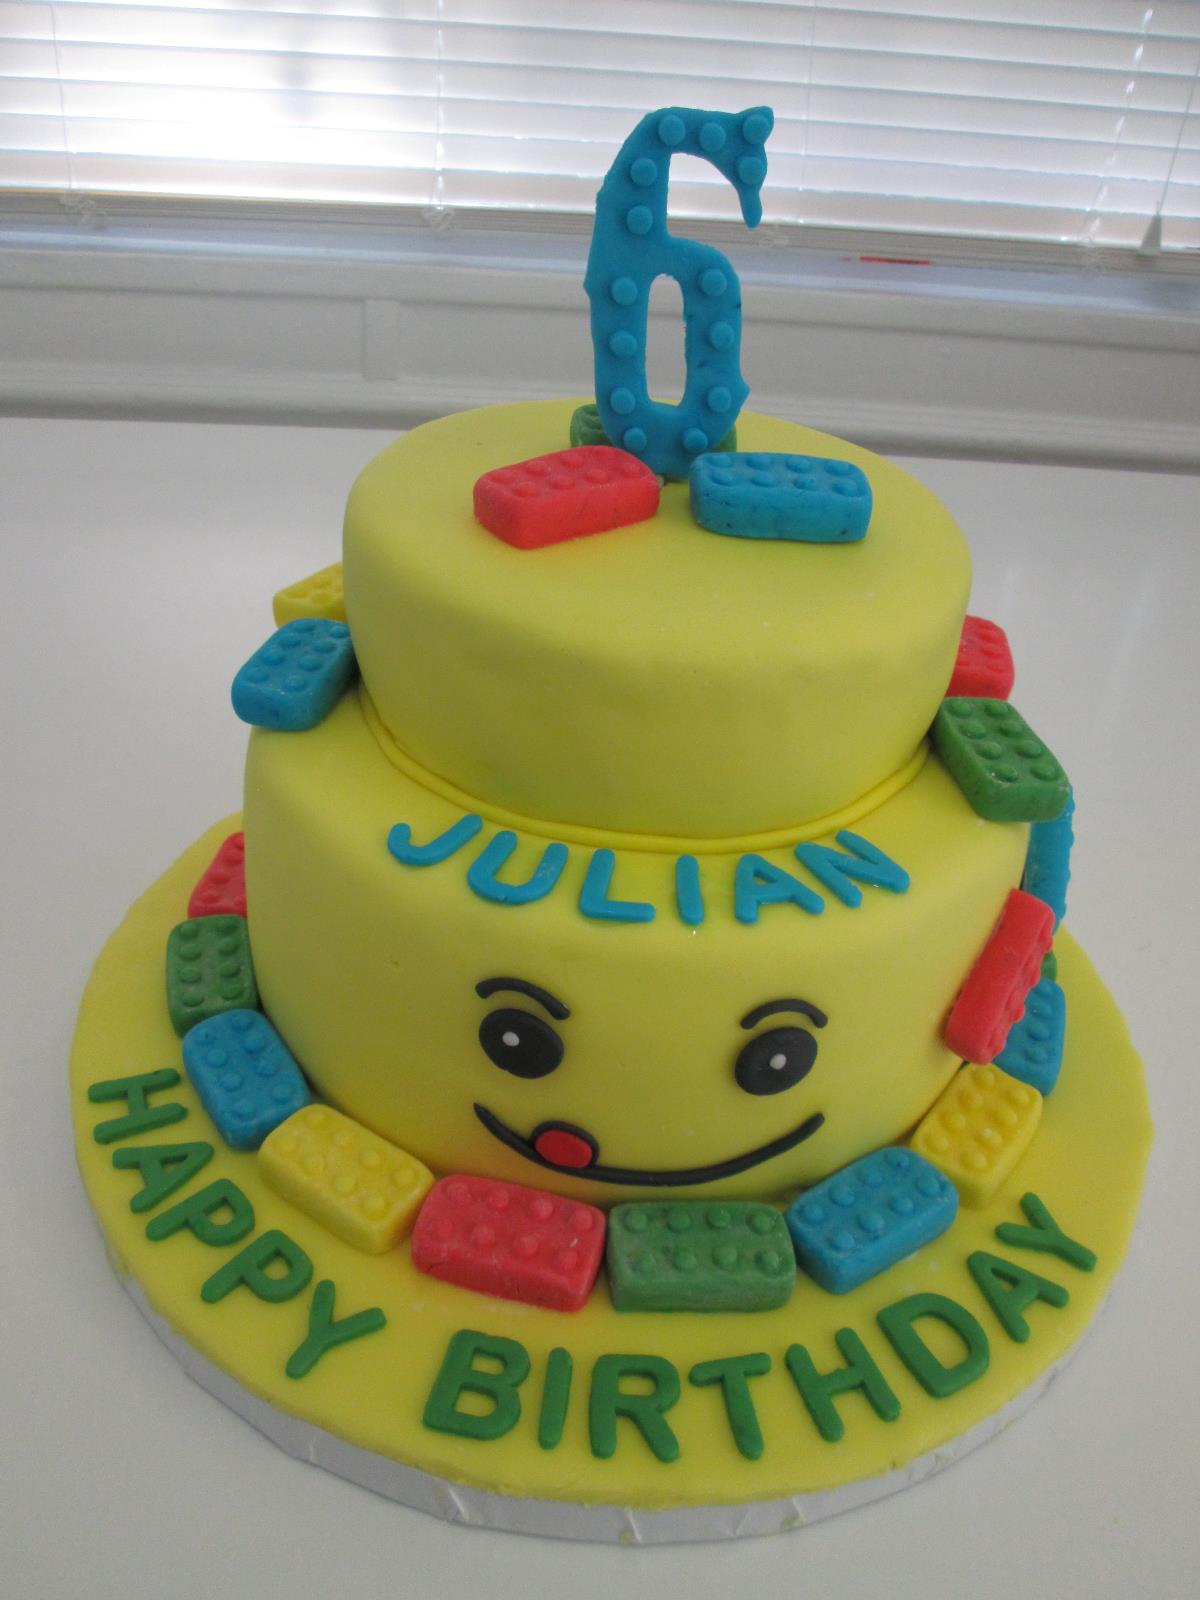 Children's Birthday Cakes  Lego birthday cake, Lego birthday, Lego cake